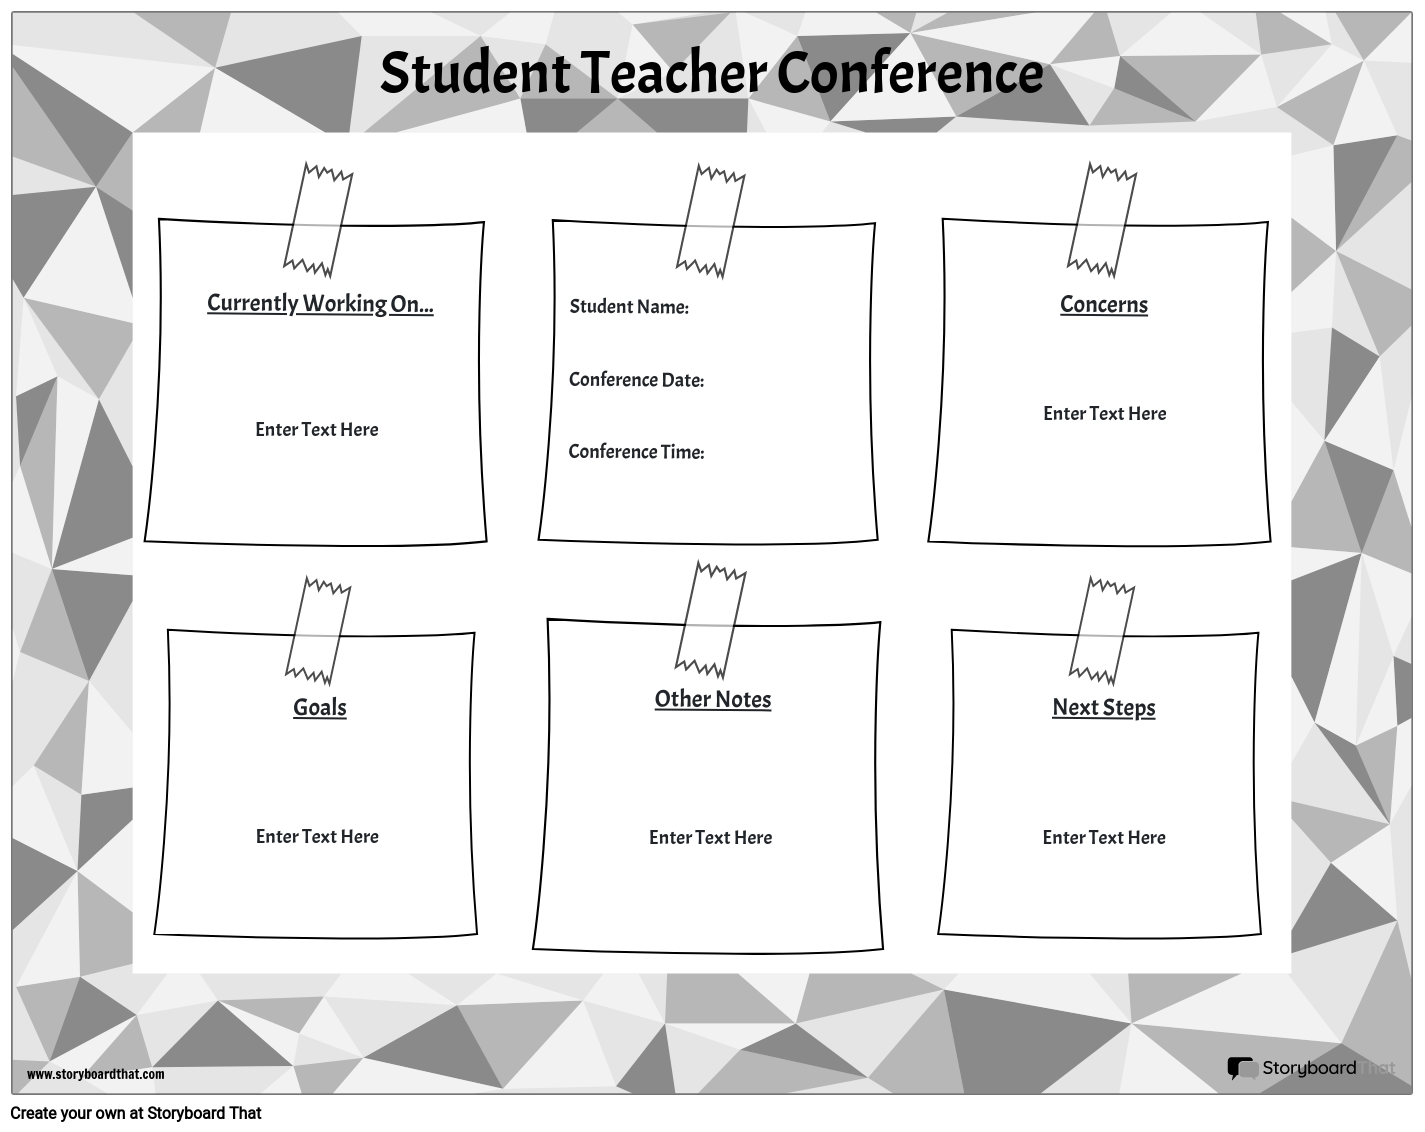 Konferencija Studentskih Nastavnika 6